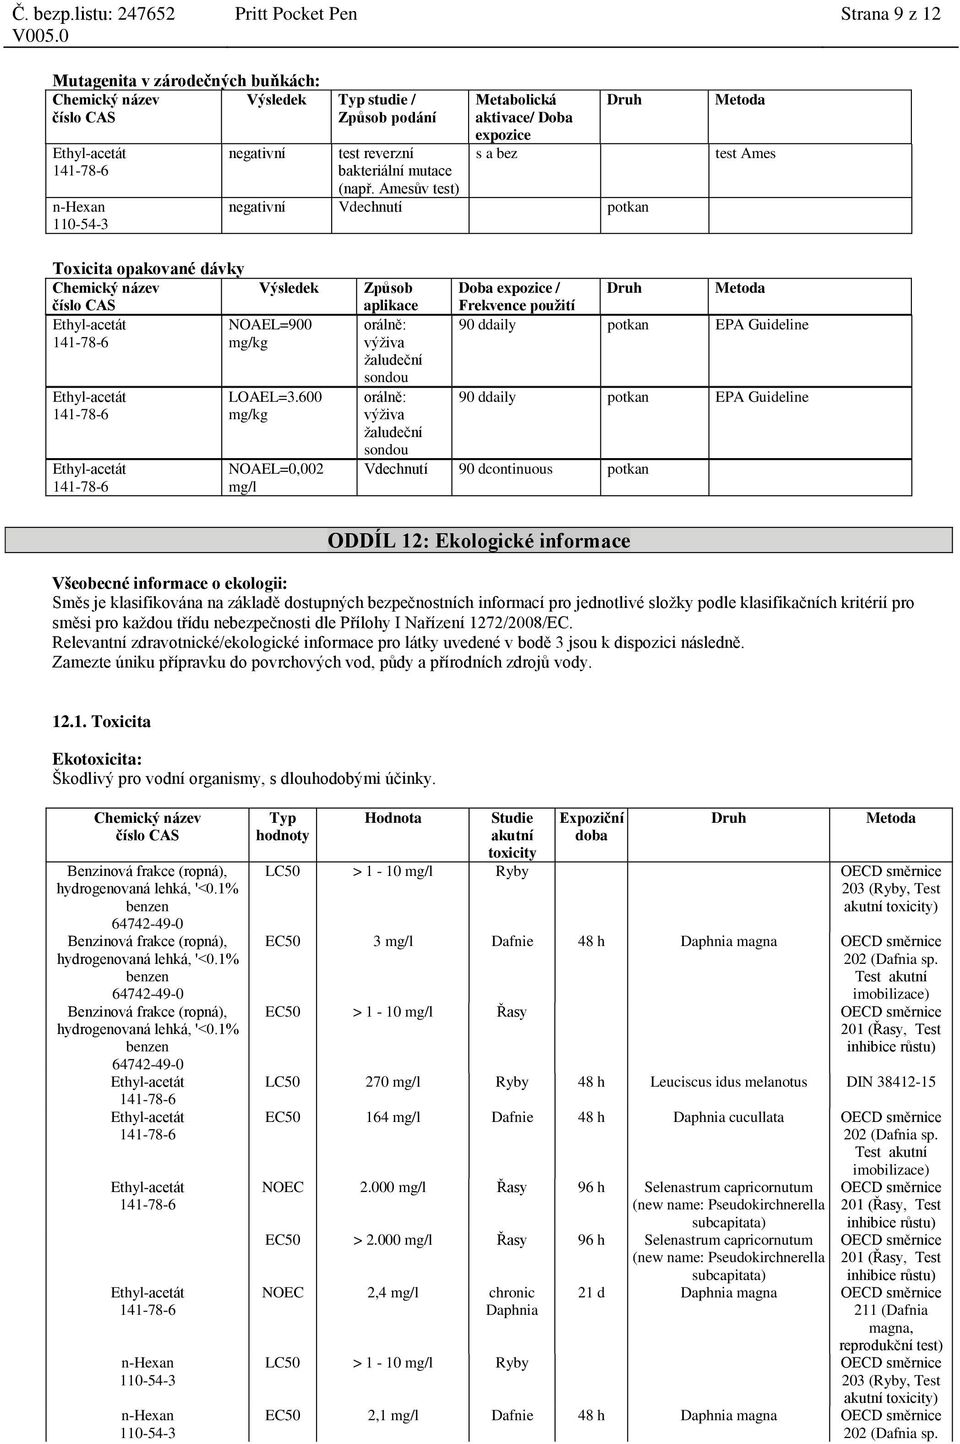 600 mg/kg NOAEL=0,002 mg/l Způsob aplikace Doba expozice / Frekvence použití Druh Metoda orálně: 90 ddaily potkan EPA Guideline výživa žaludeční sondou orálně: 90 ddaily potkan EPA Guideline výživa